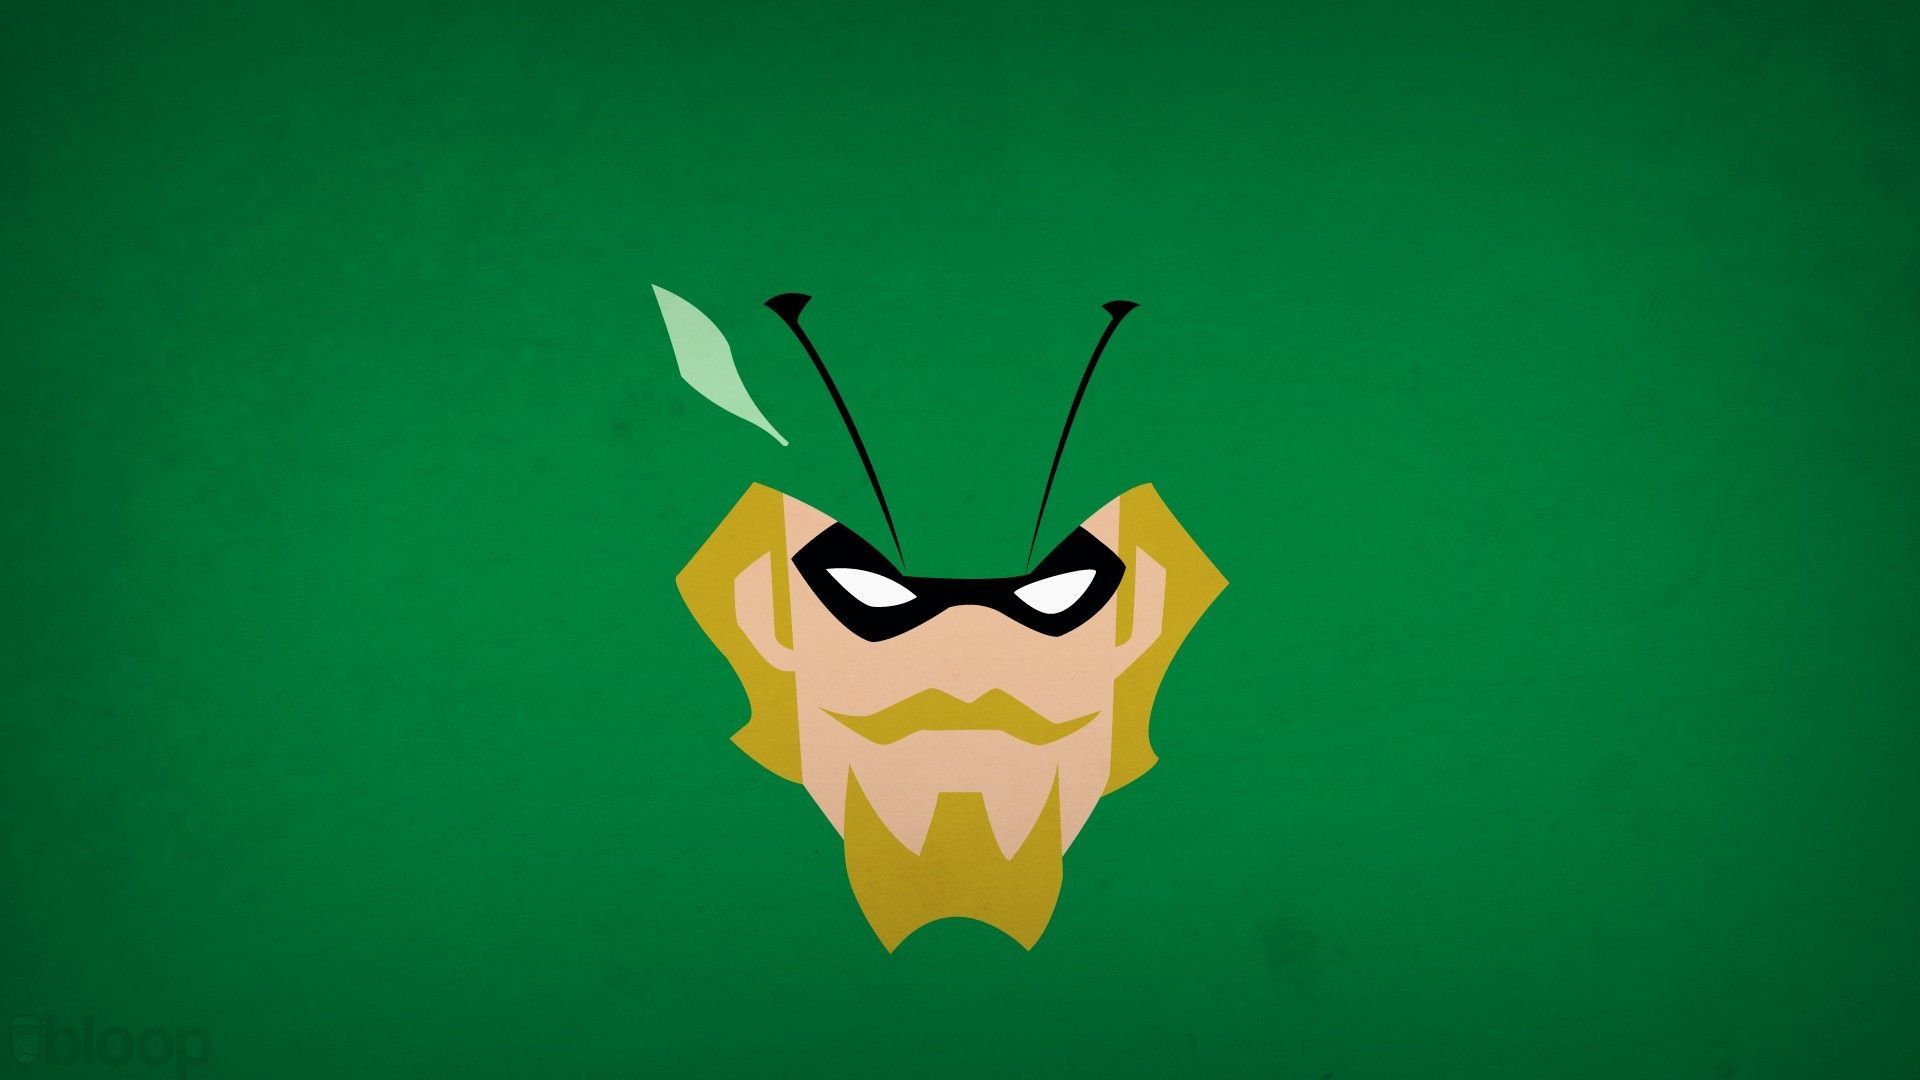 #Green Arrow, #minimalism, #DC Comics, #simple background, #Blo0p, #comics, #superhero, wallpaper. Mocah.org HD Desktop Wallpaper